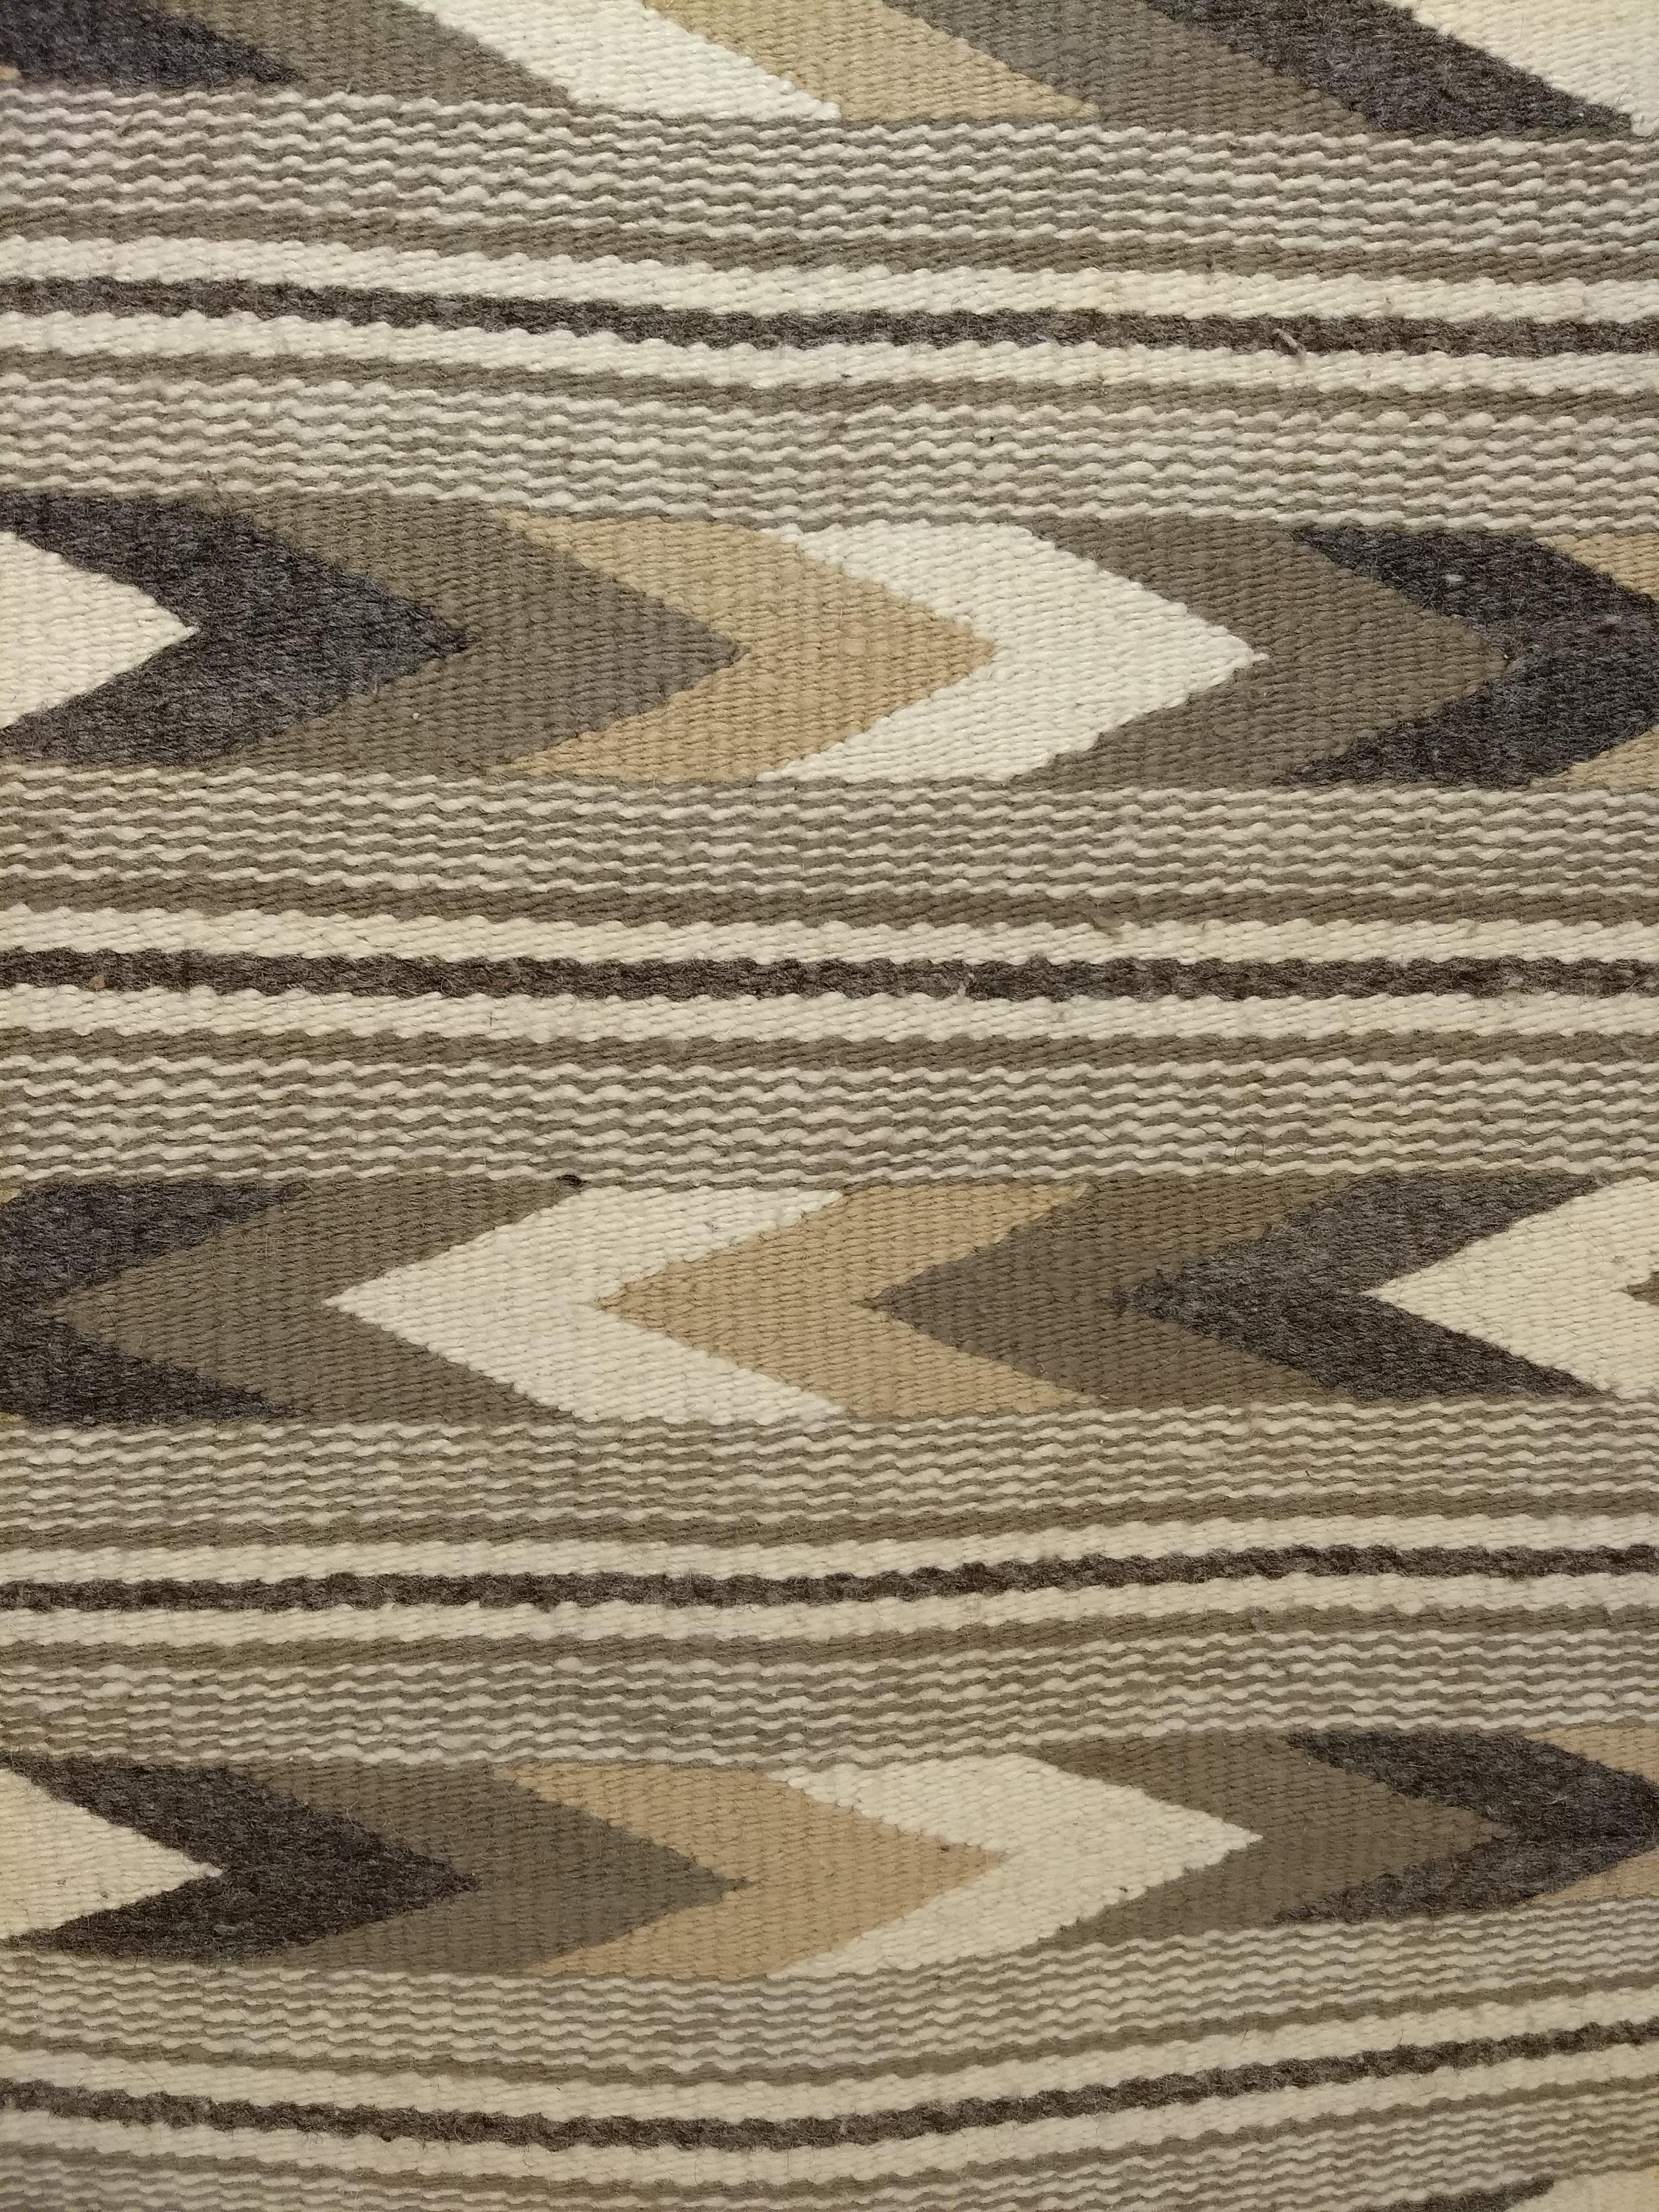 Vintage American Navajo Rug in Chevron Stripe Pattern in Gray, Ivory, Black For Sale 1